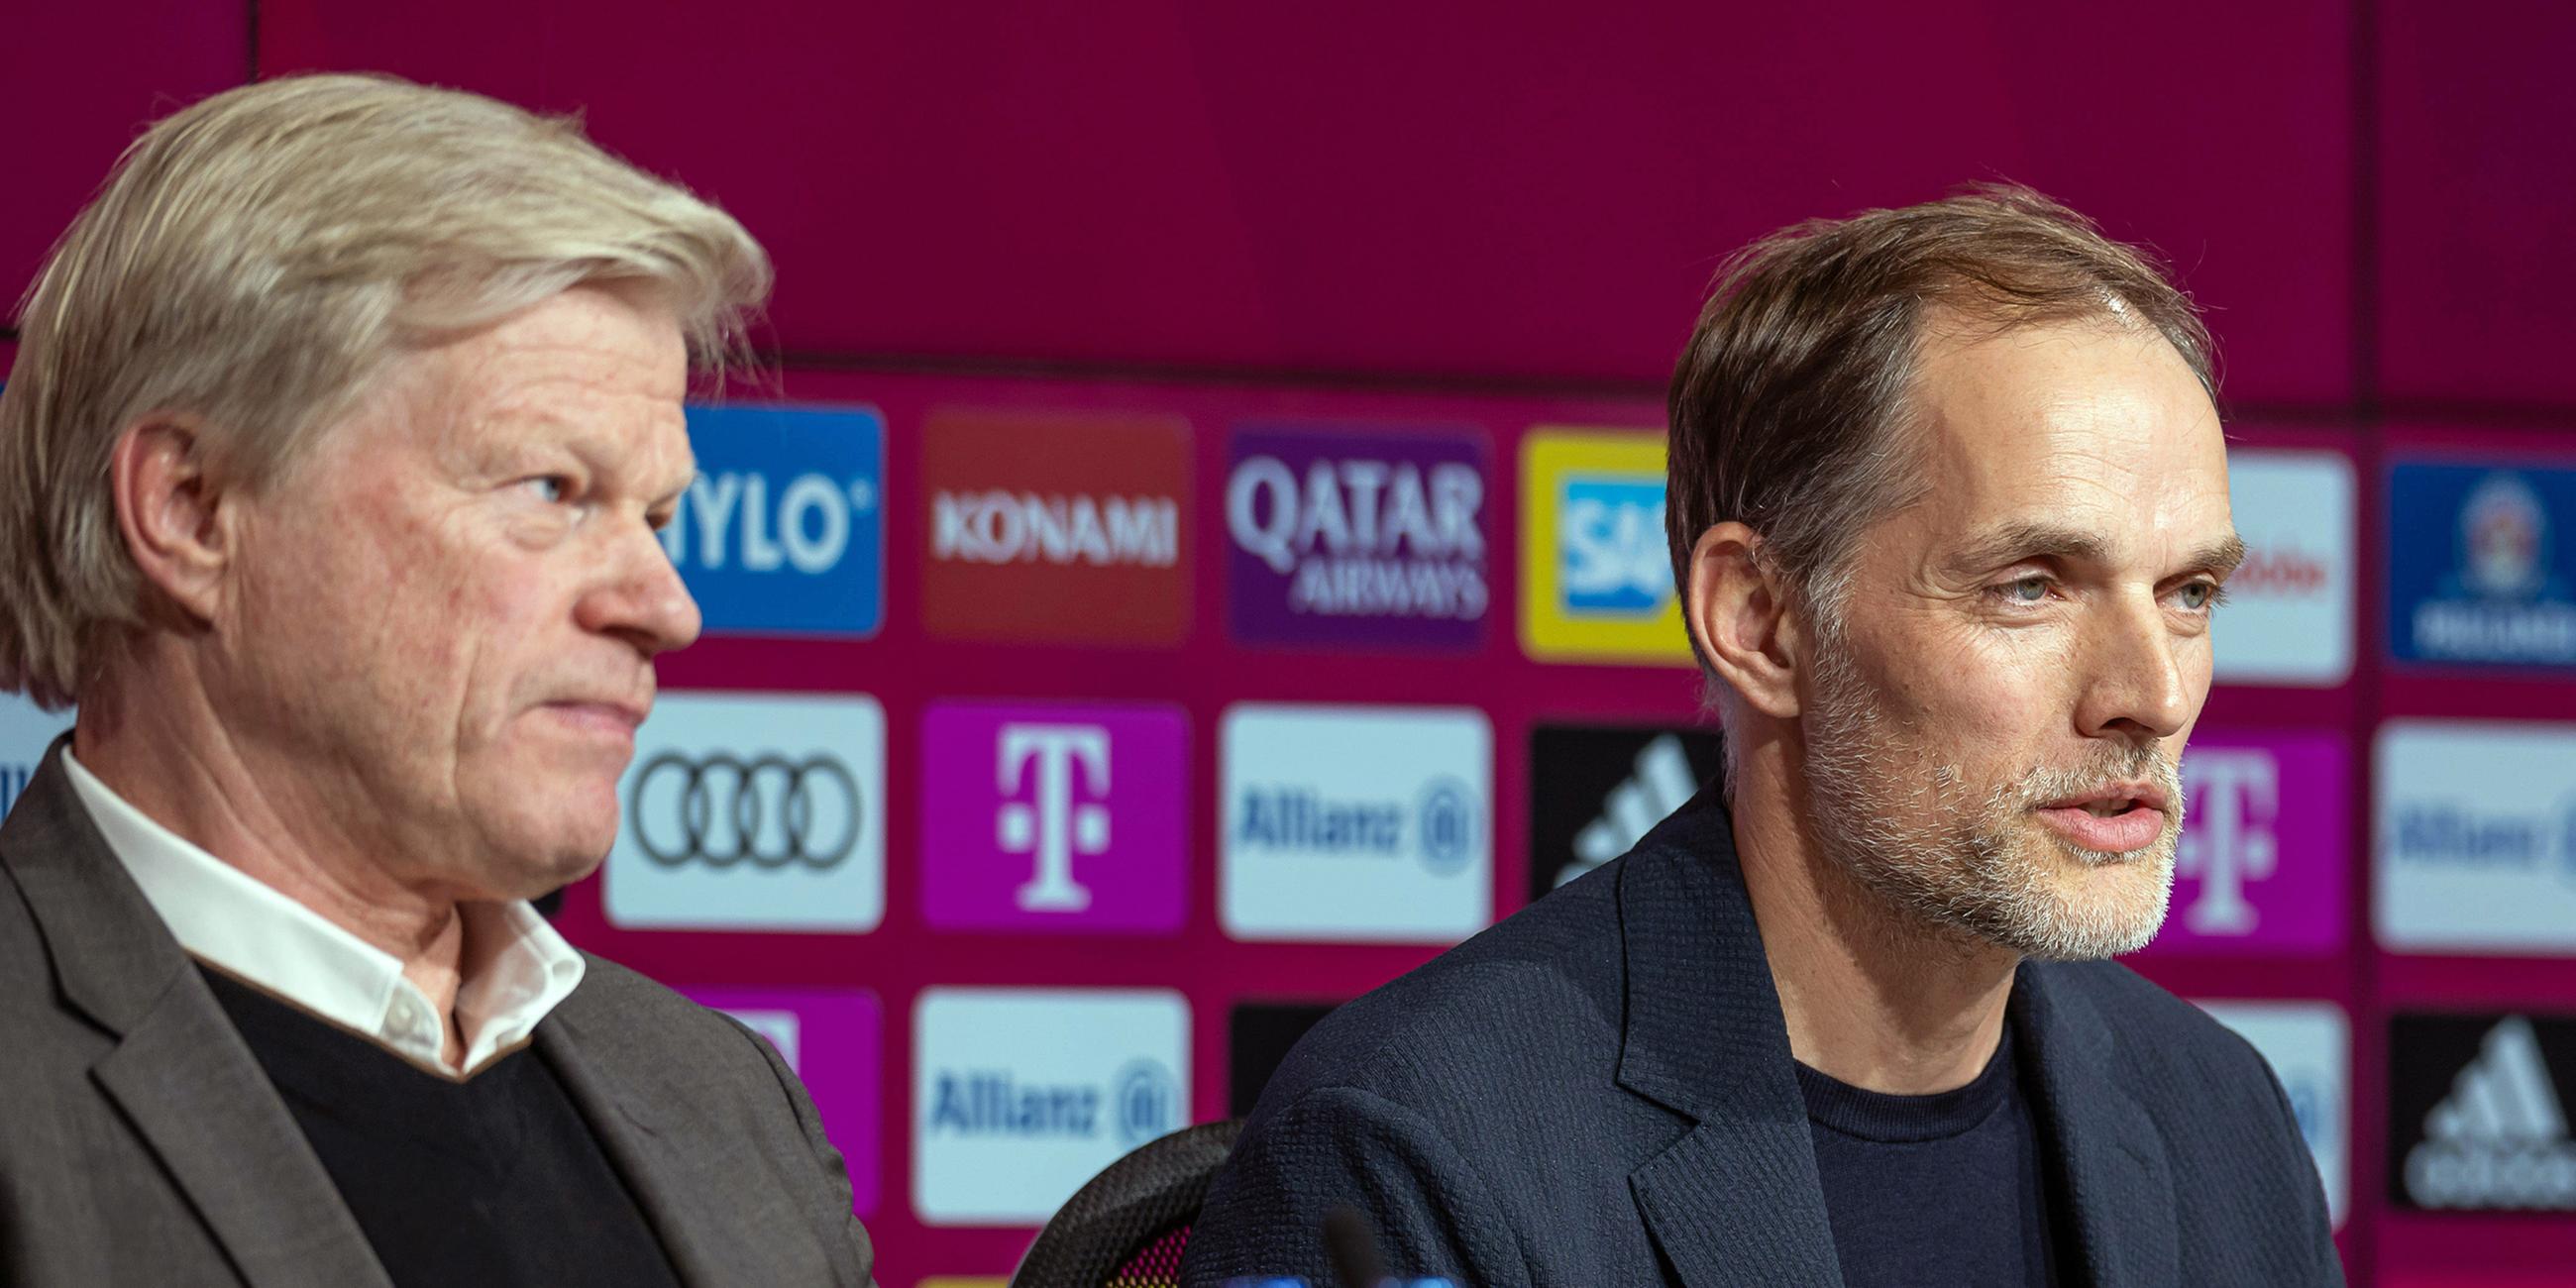 25.03.2023, München: Oliver Kahn (l.) und Thomas Tuchel bei der Pressekonferenz des FC Bayern München